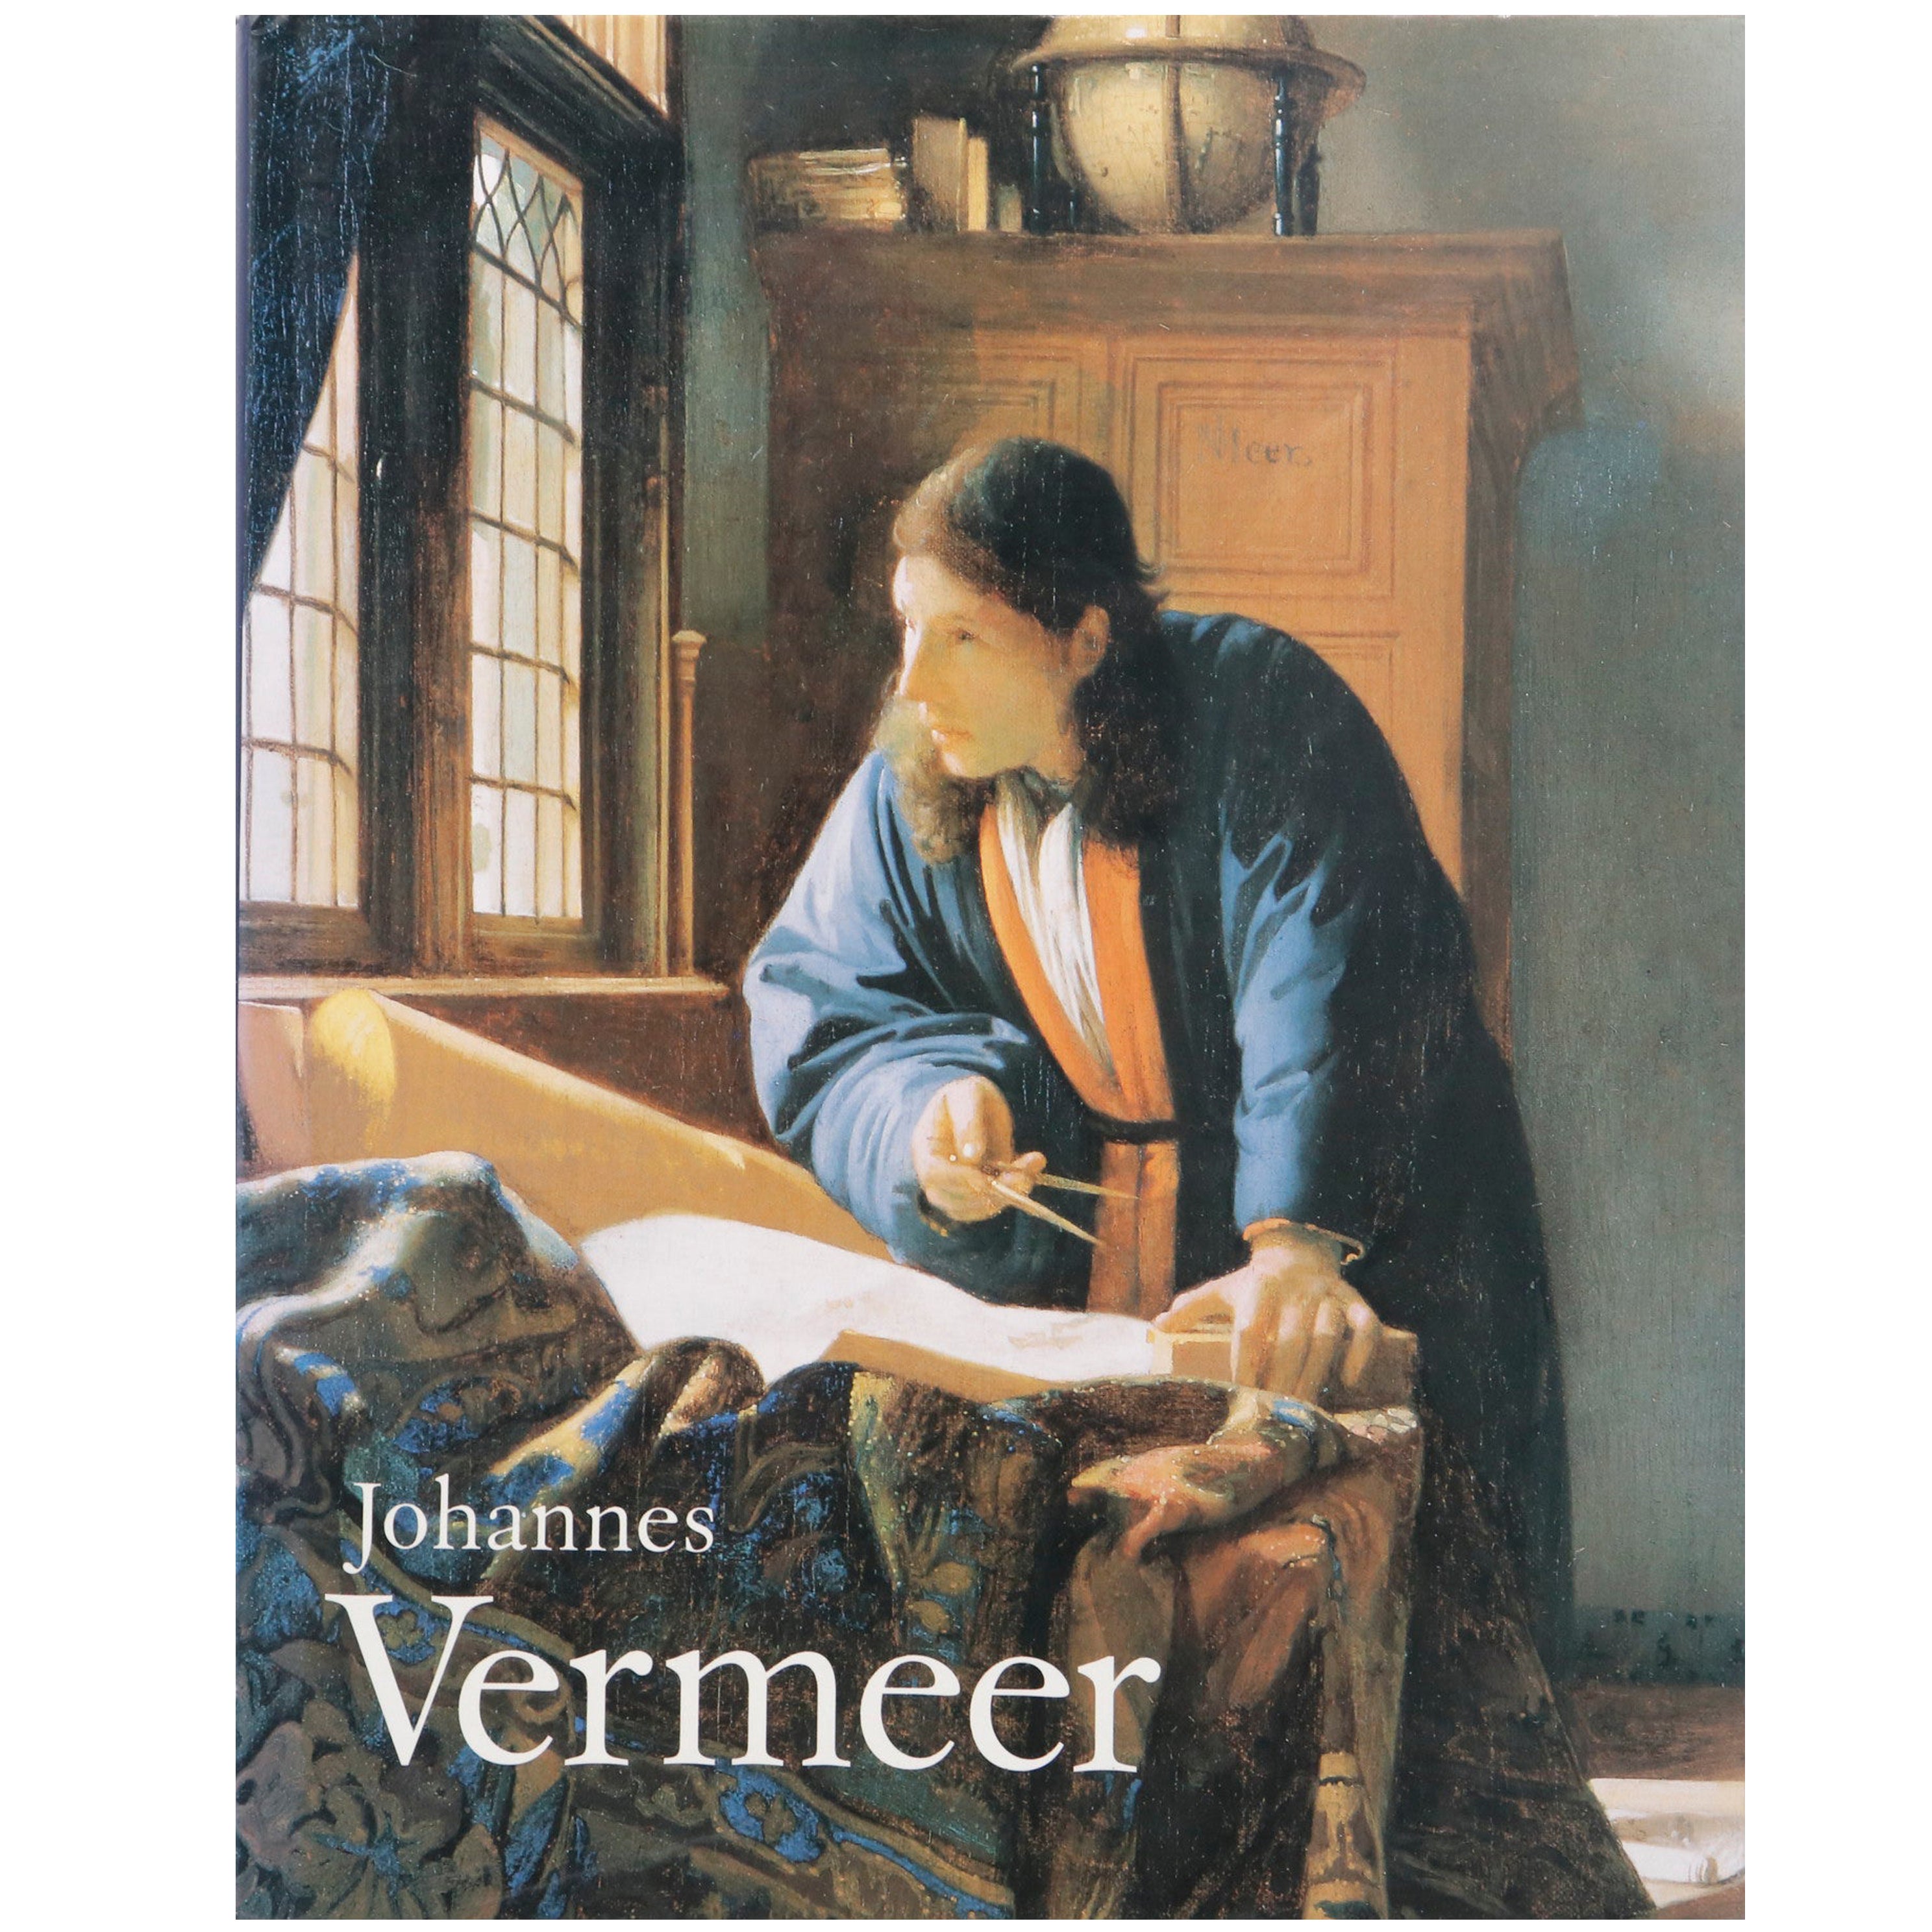 Johannes Vermeer Art Book